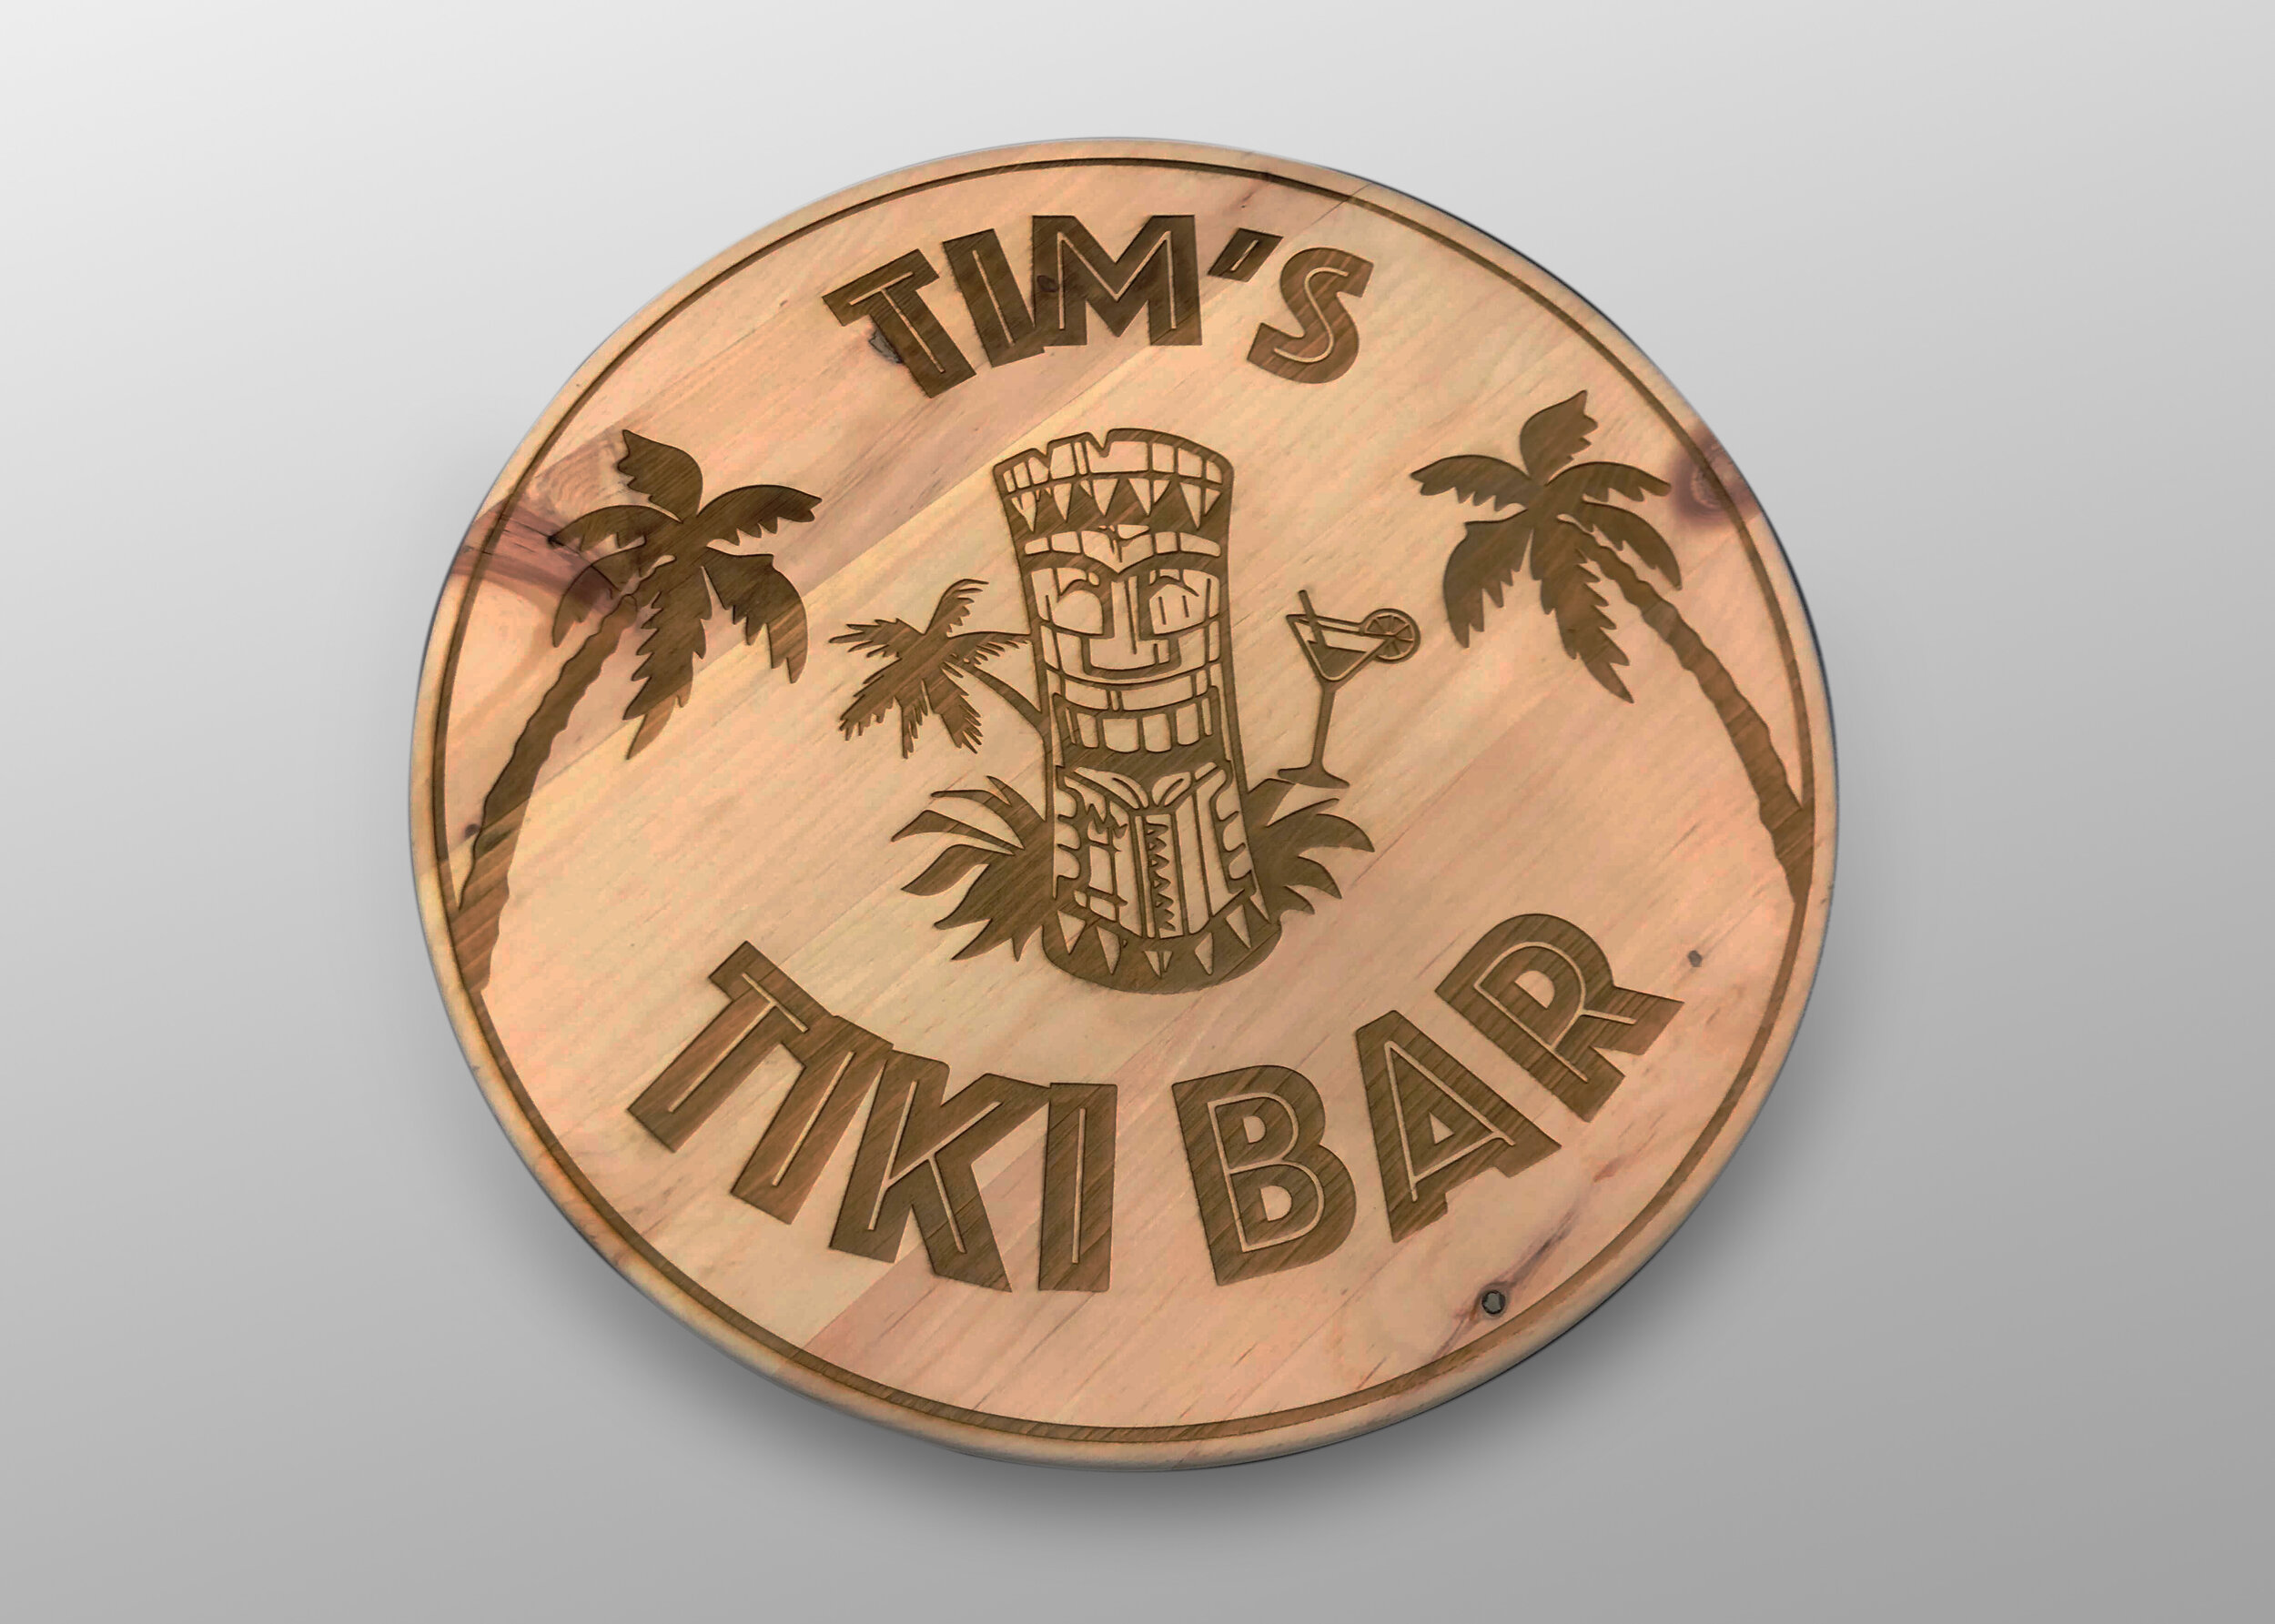 Tims Tiki Bar.jpg